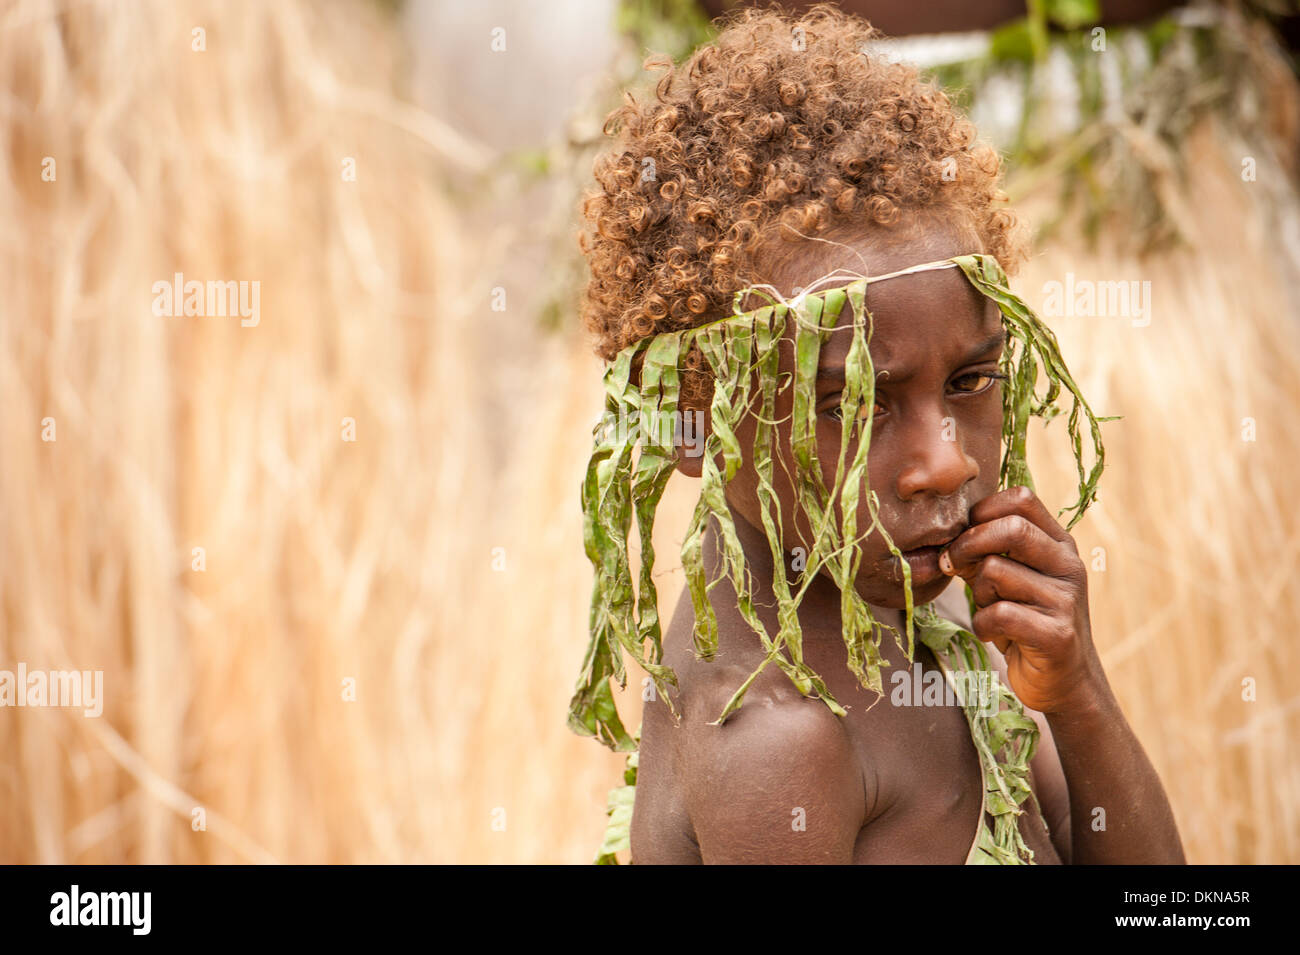 Enfant parmi les artistes de Tanna prenant part à Fest' Sawagoro, une célébration de la culture traditionnelle, la coutume au Vanuatu. Banque D'Images